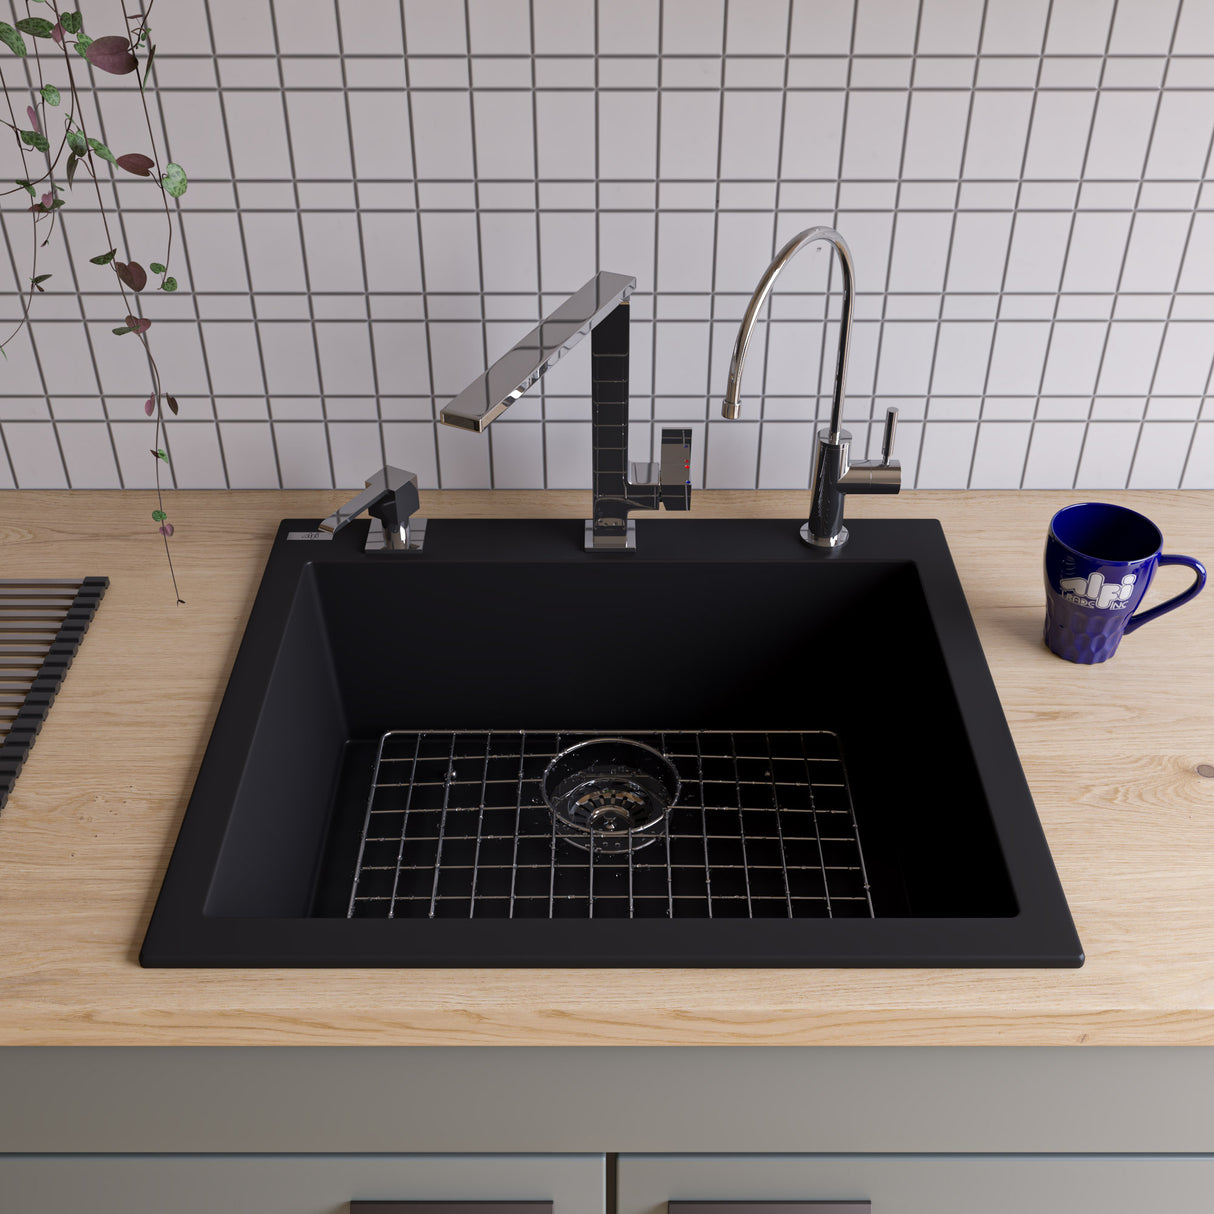 ALFI brand AB2420DI-BLA Black 24" Drop-In Single Bowl Granite Composite Kitchen Sink